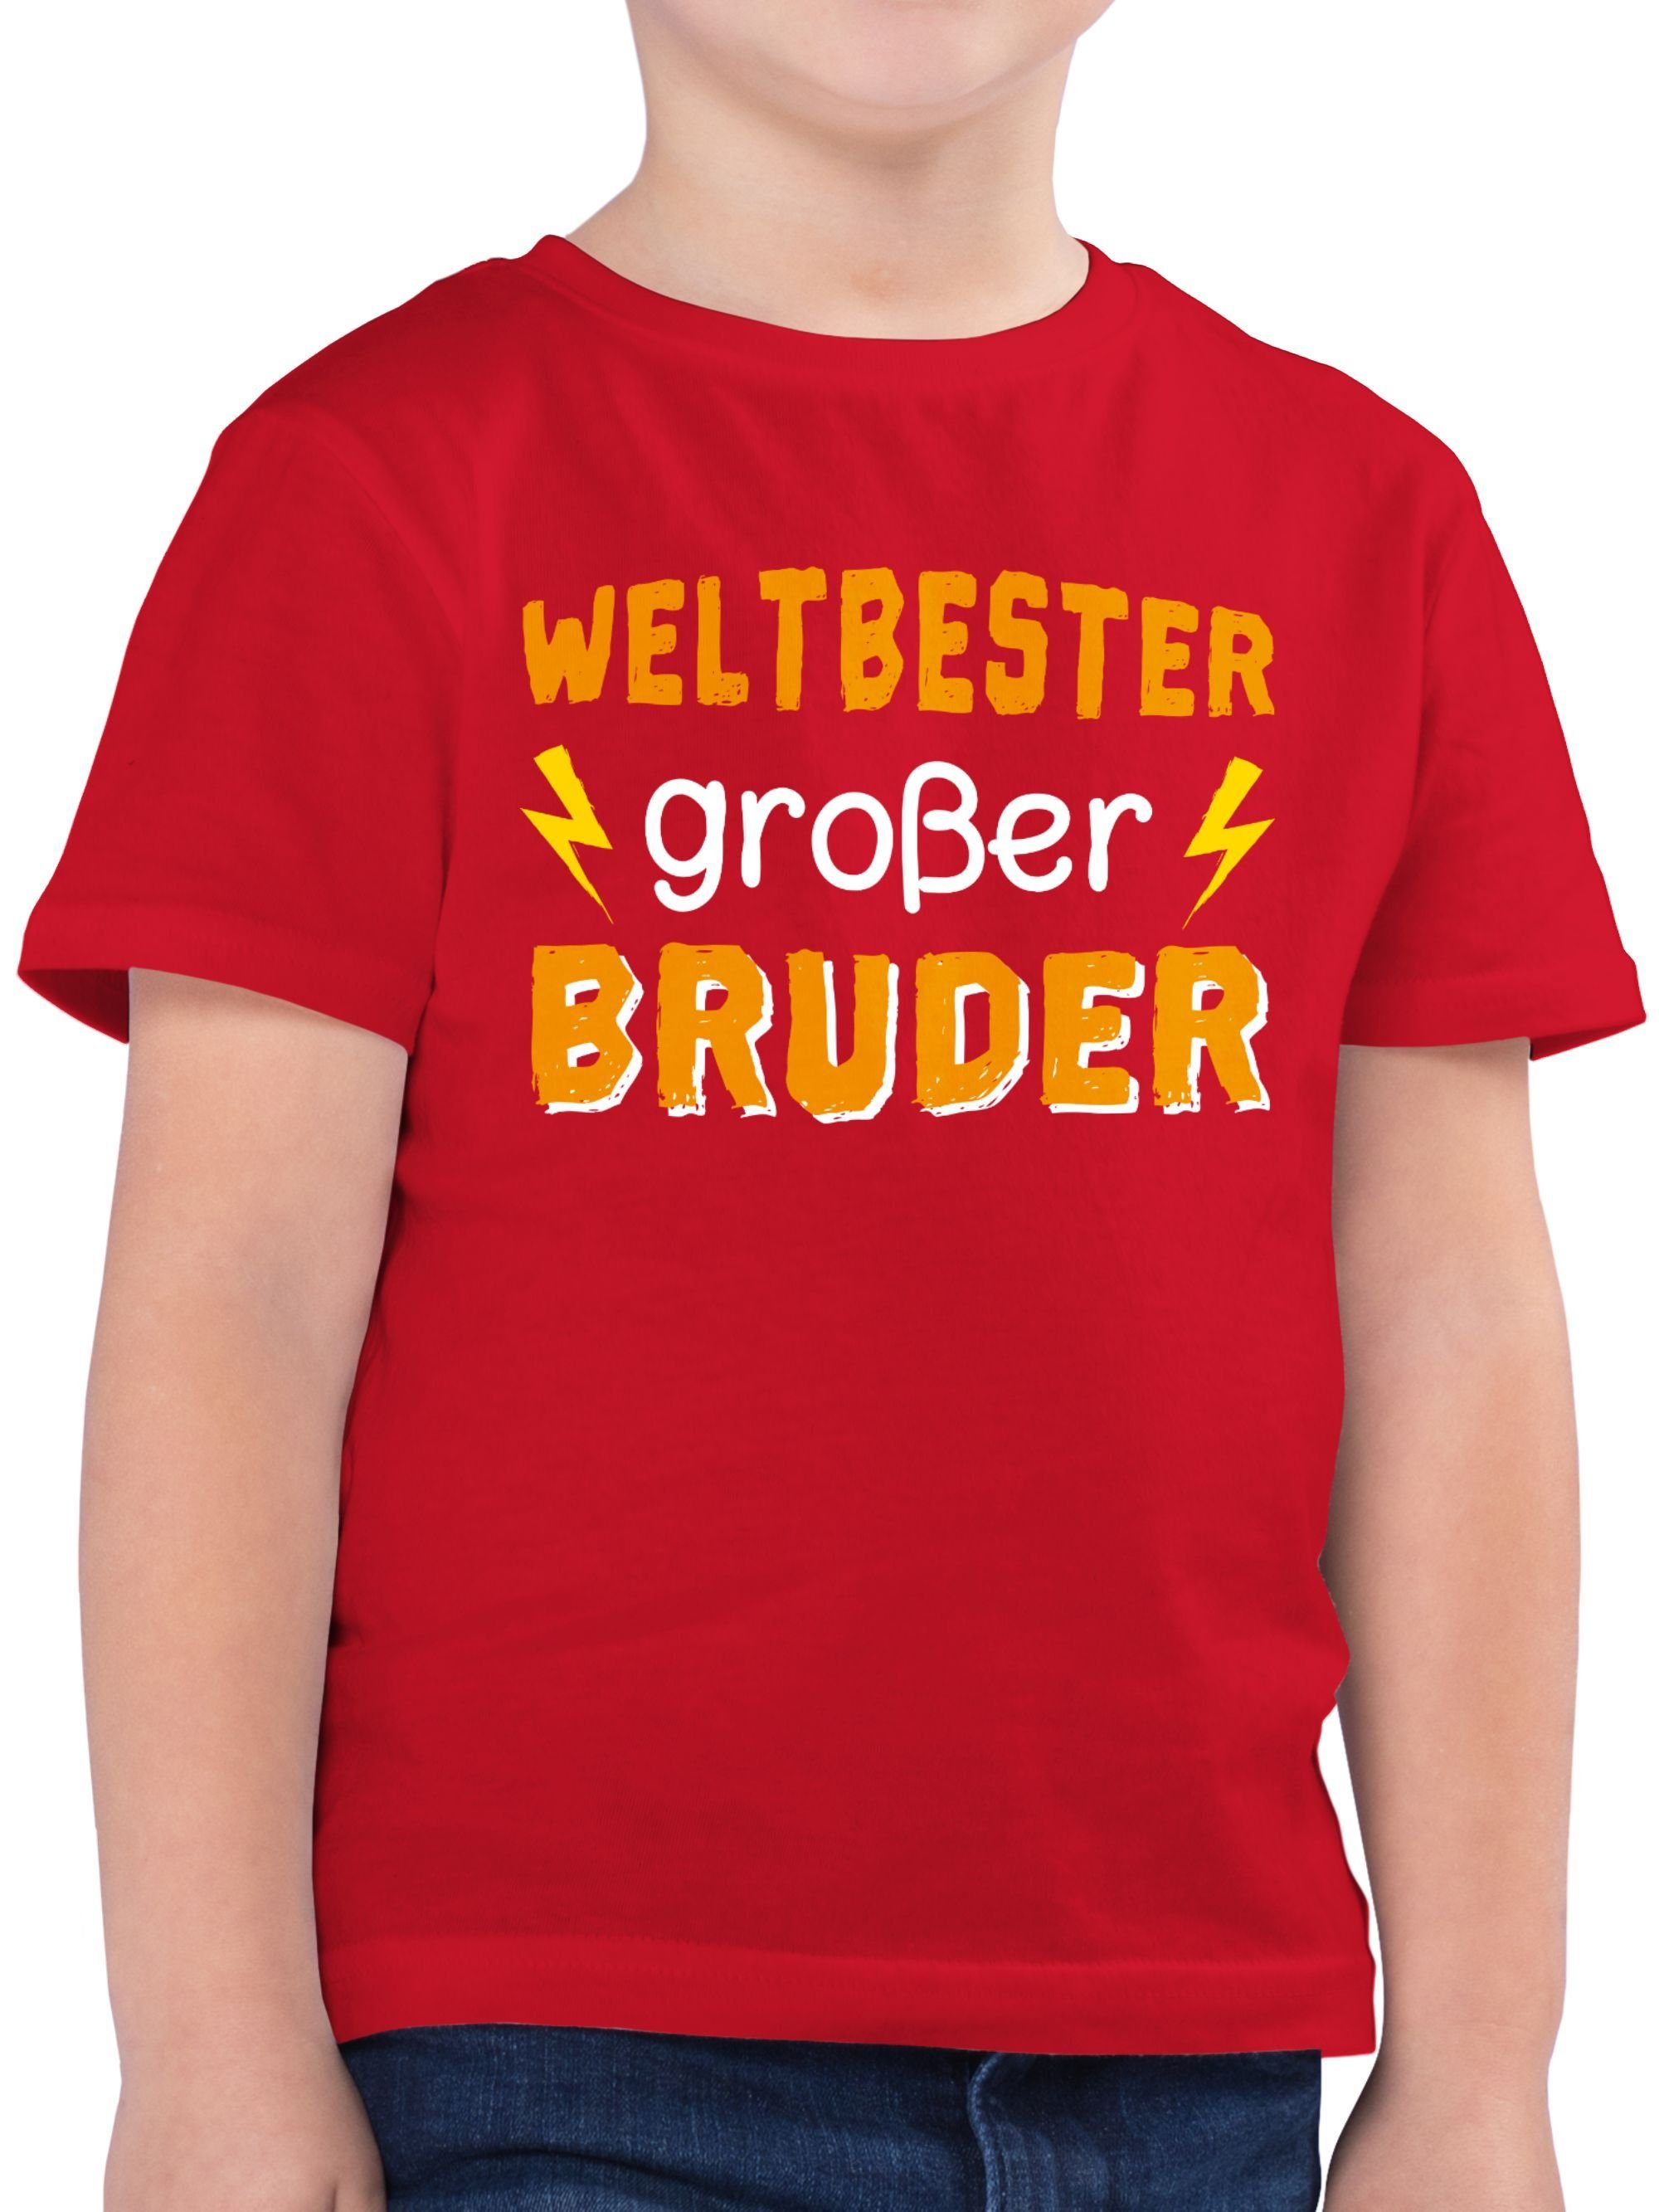 Rot 3 Bruder großer Weltbester T-Shirt Shirtracer Bruder Großer